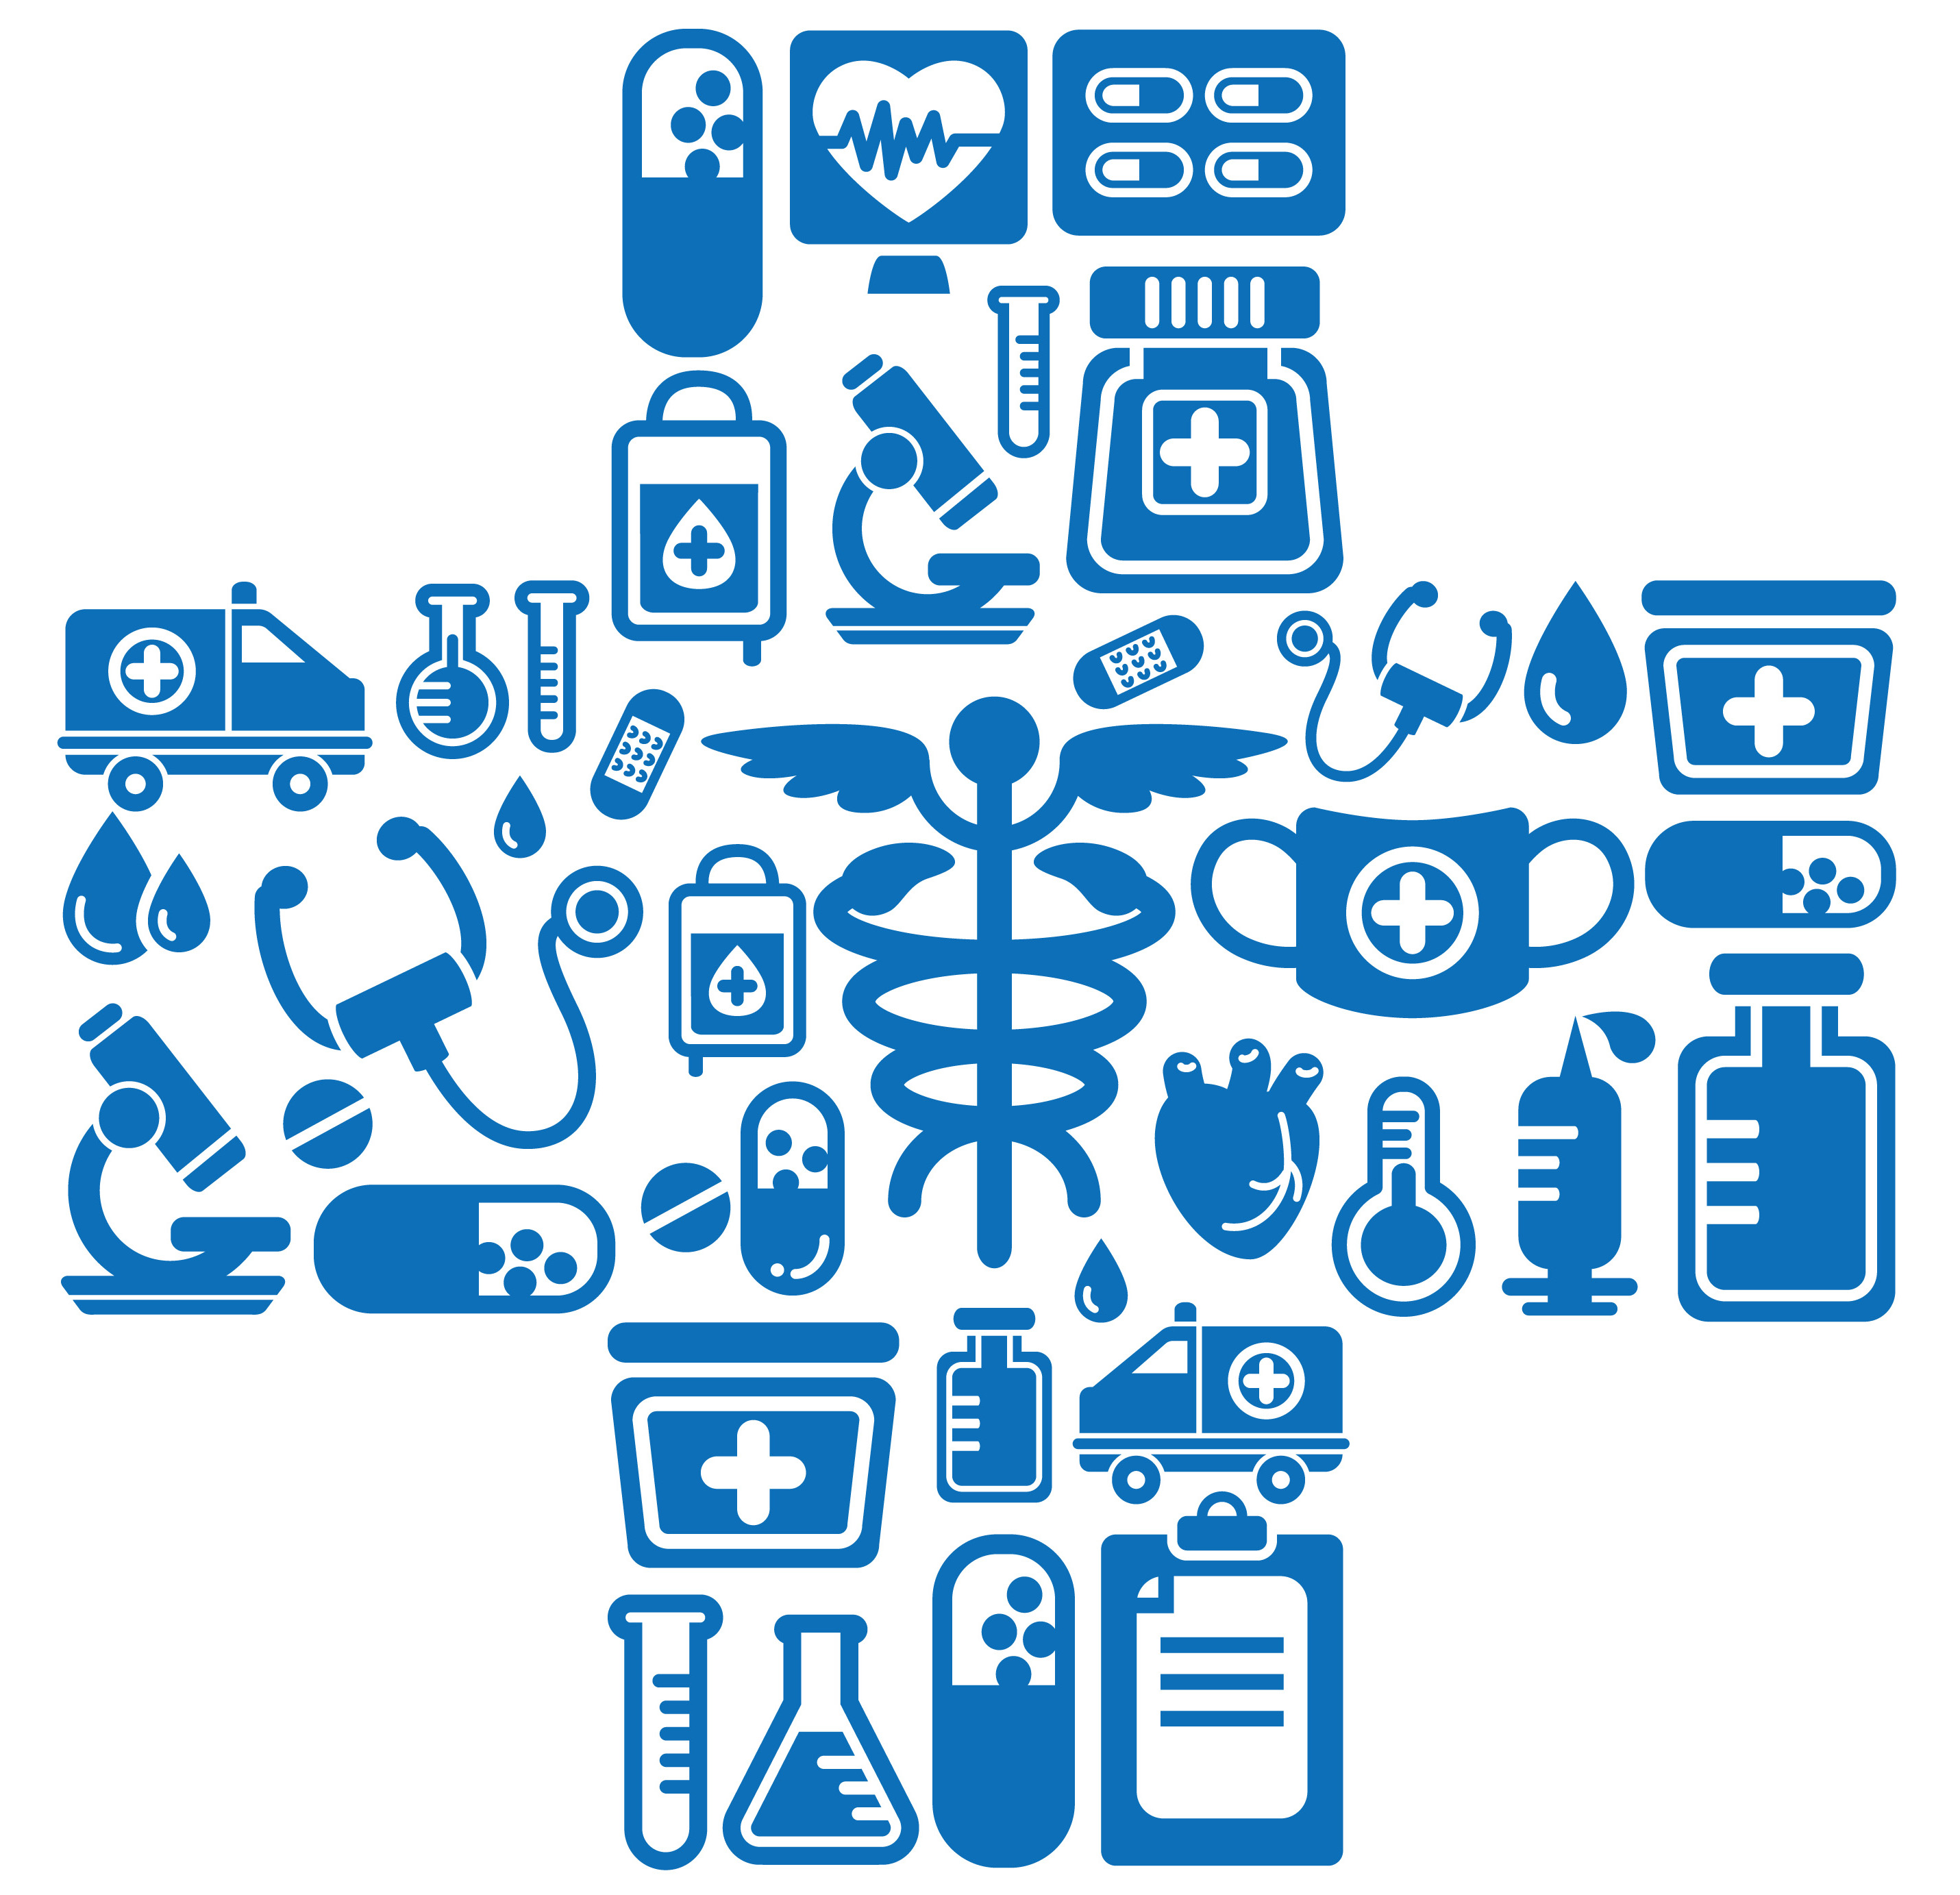 Здравоохранение - Медицина и медицинские товары и услуги - медицинские организации - медучреждения - Лечебно-профилактические учреждения, ЛПУ - Лечебно-санитарные учреждения медучреждения